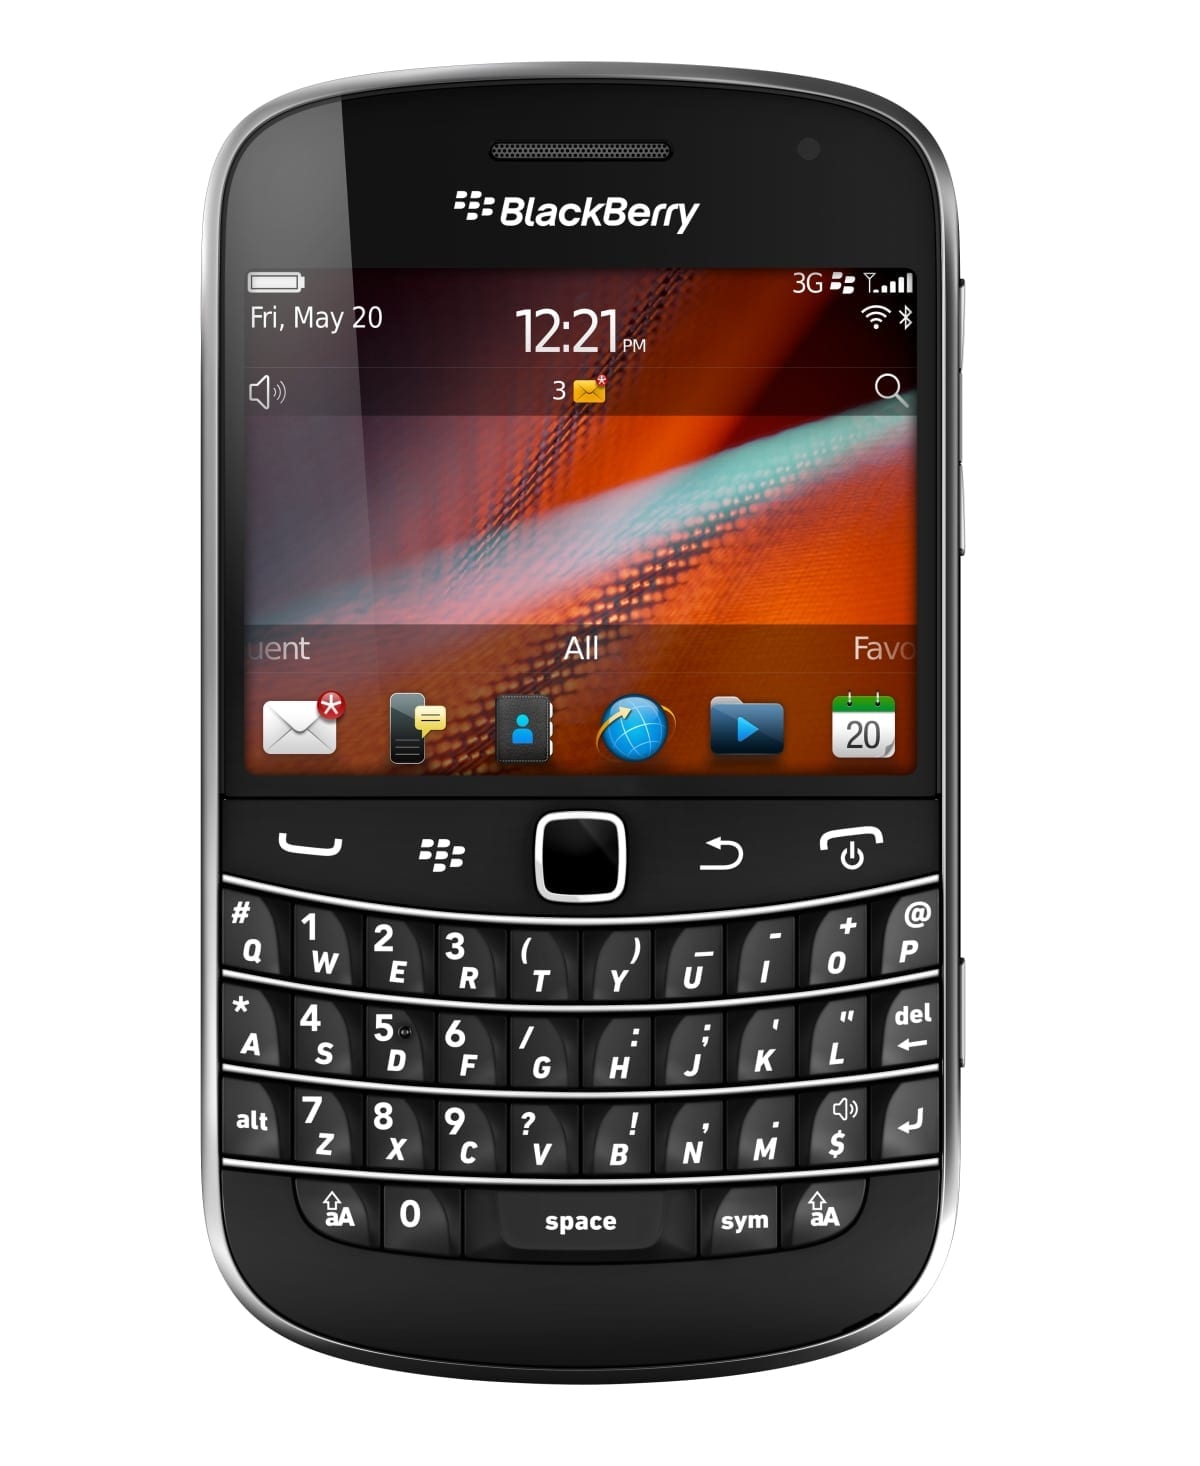 BlackBerry Bold 9900/9930 es anunciado oficialmente